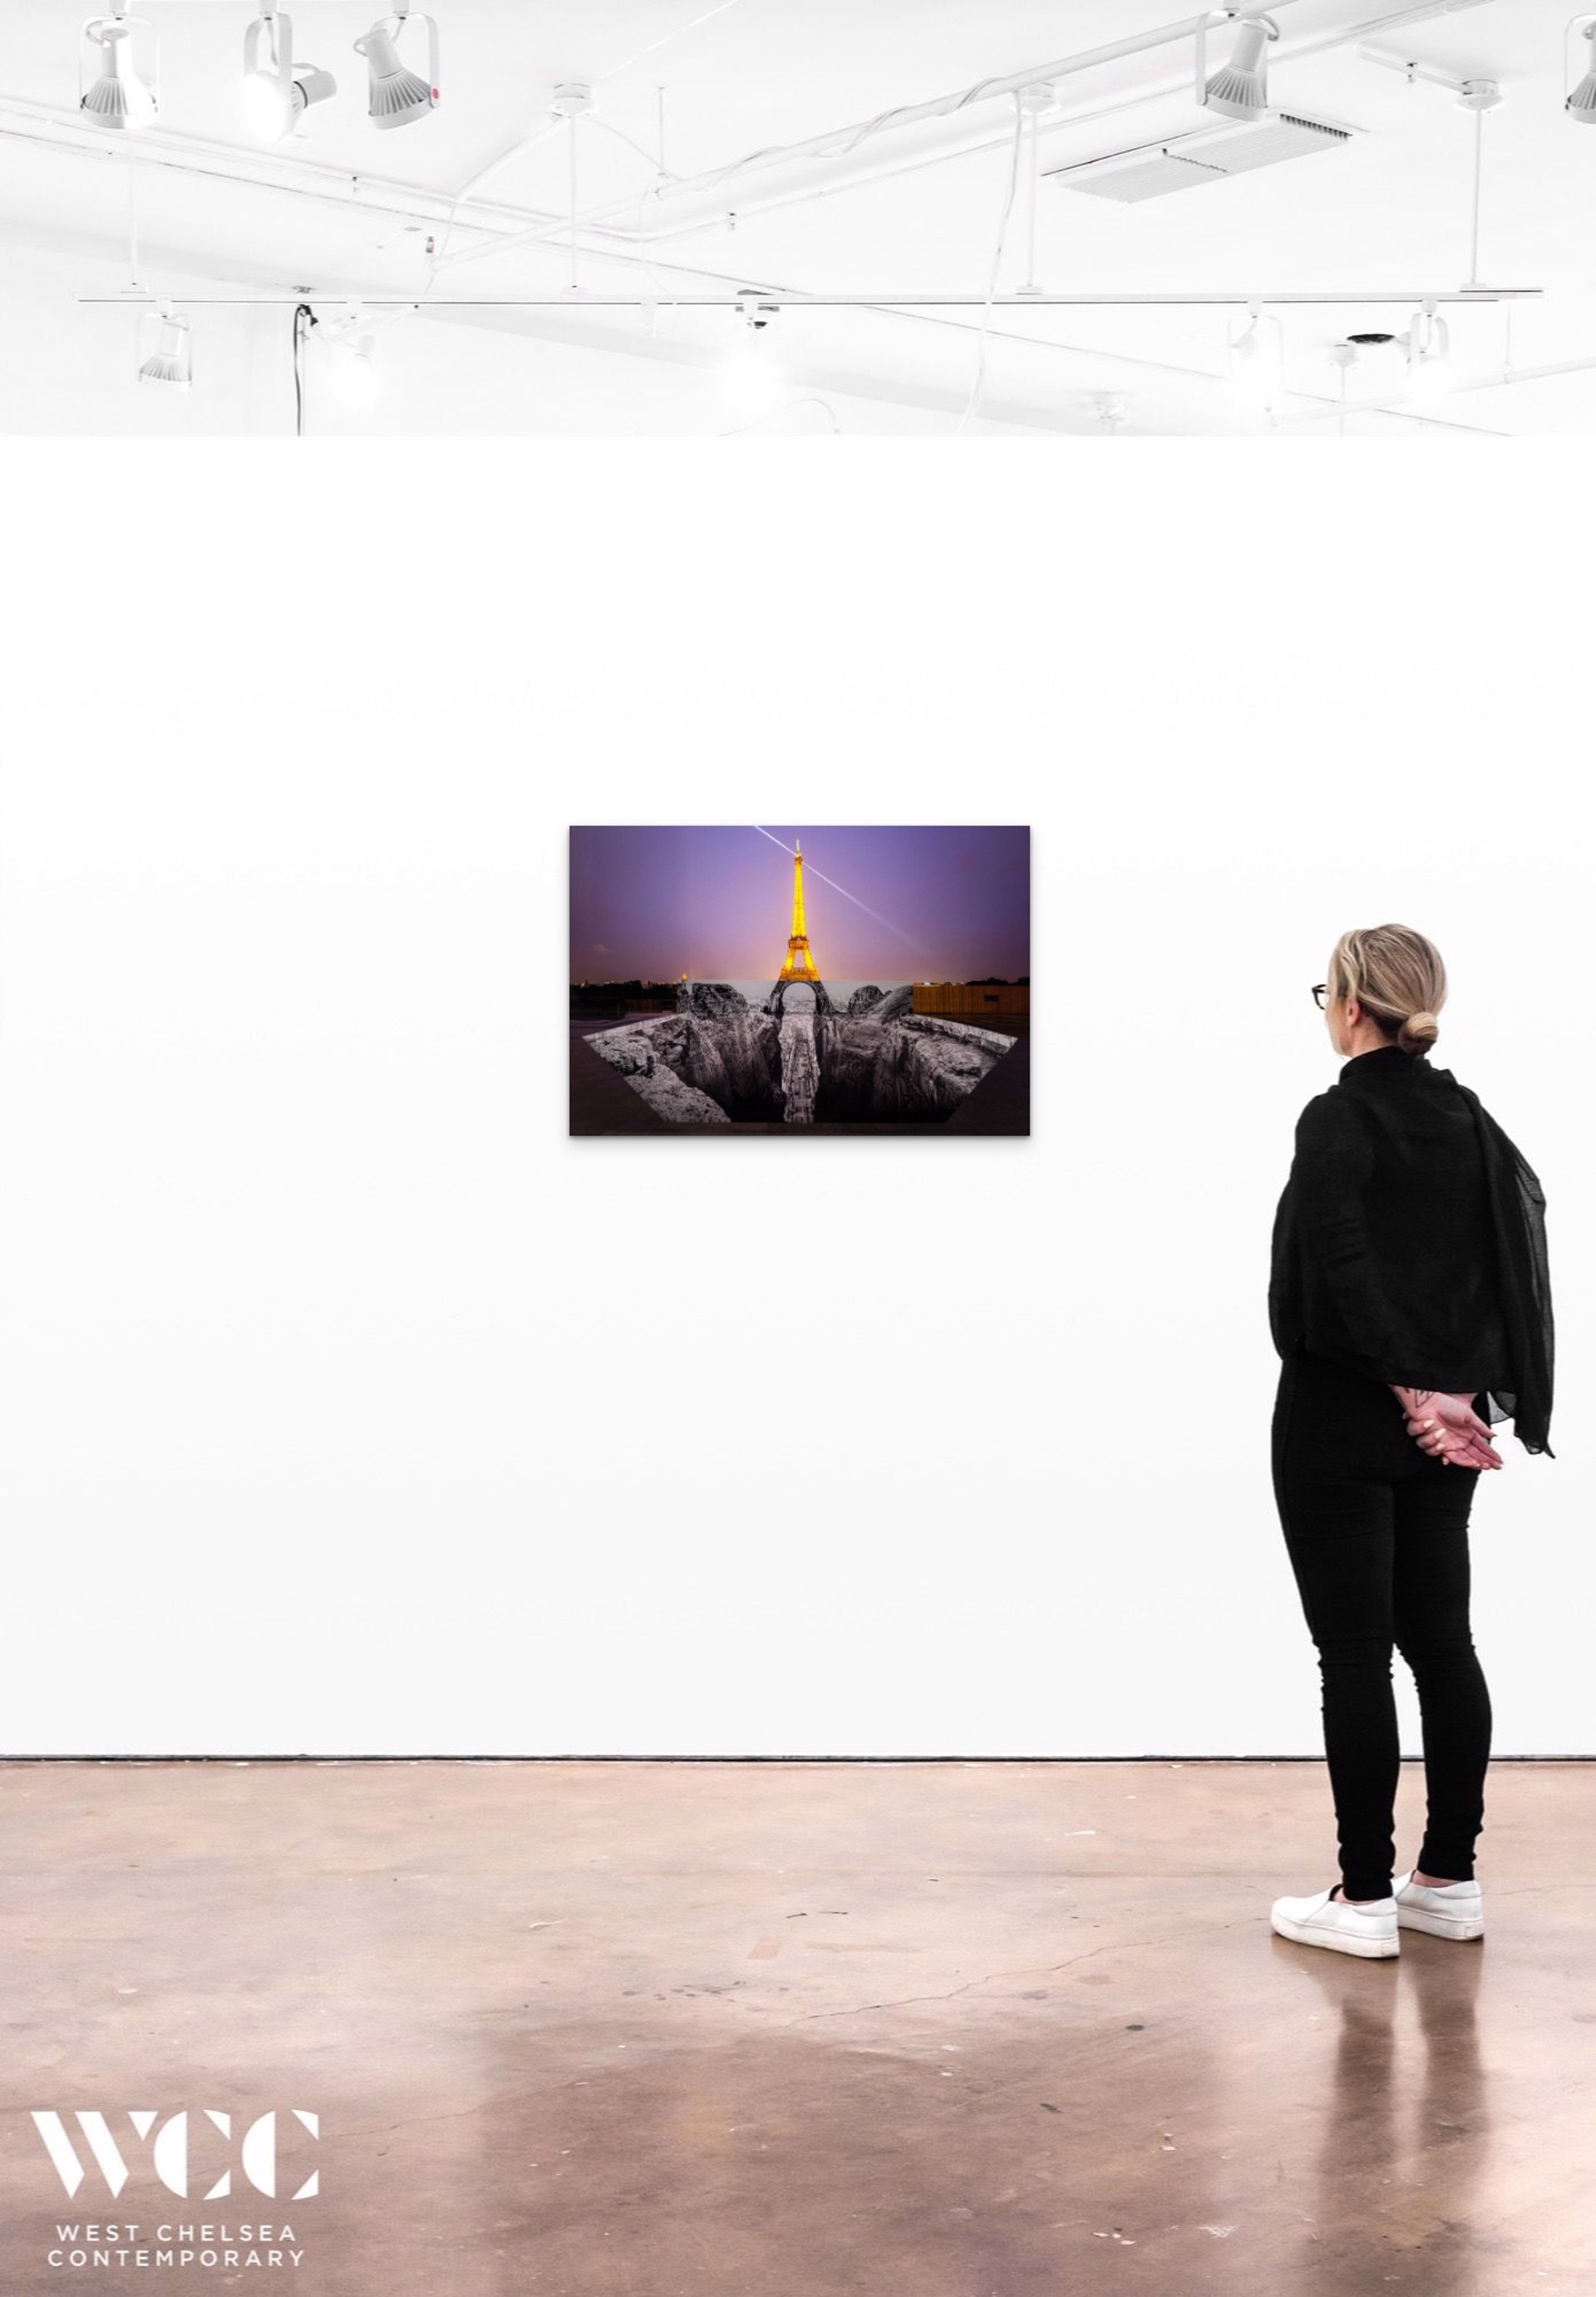 Trompe l'oeil, Les Falaises du Trocadéro, 25 mai 2021, 22h18, Paris, France, 2021 by JR